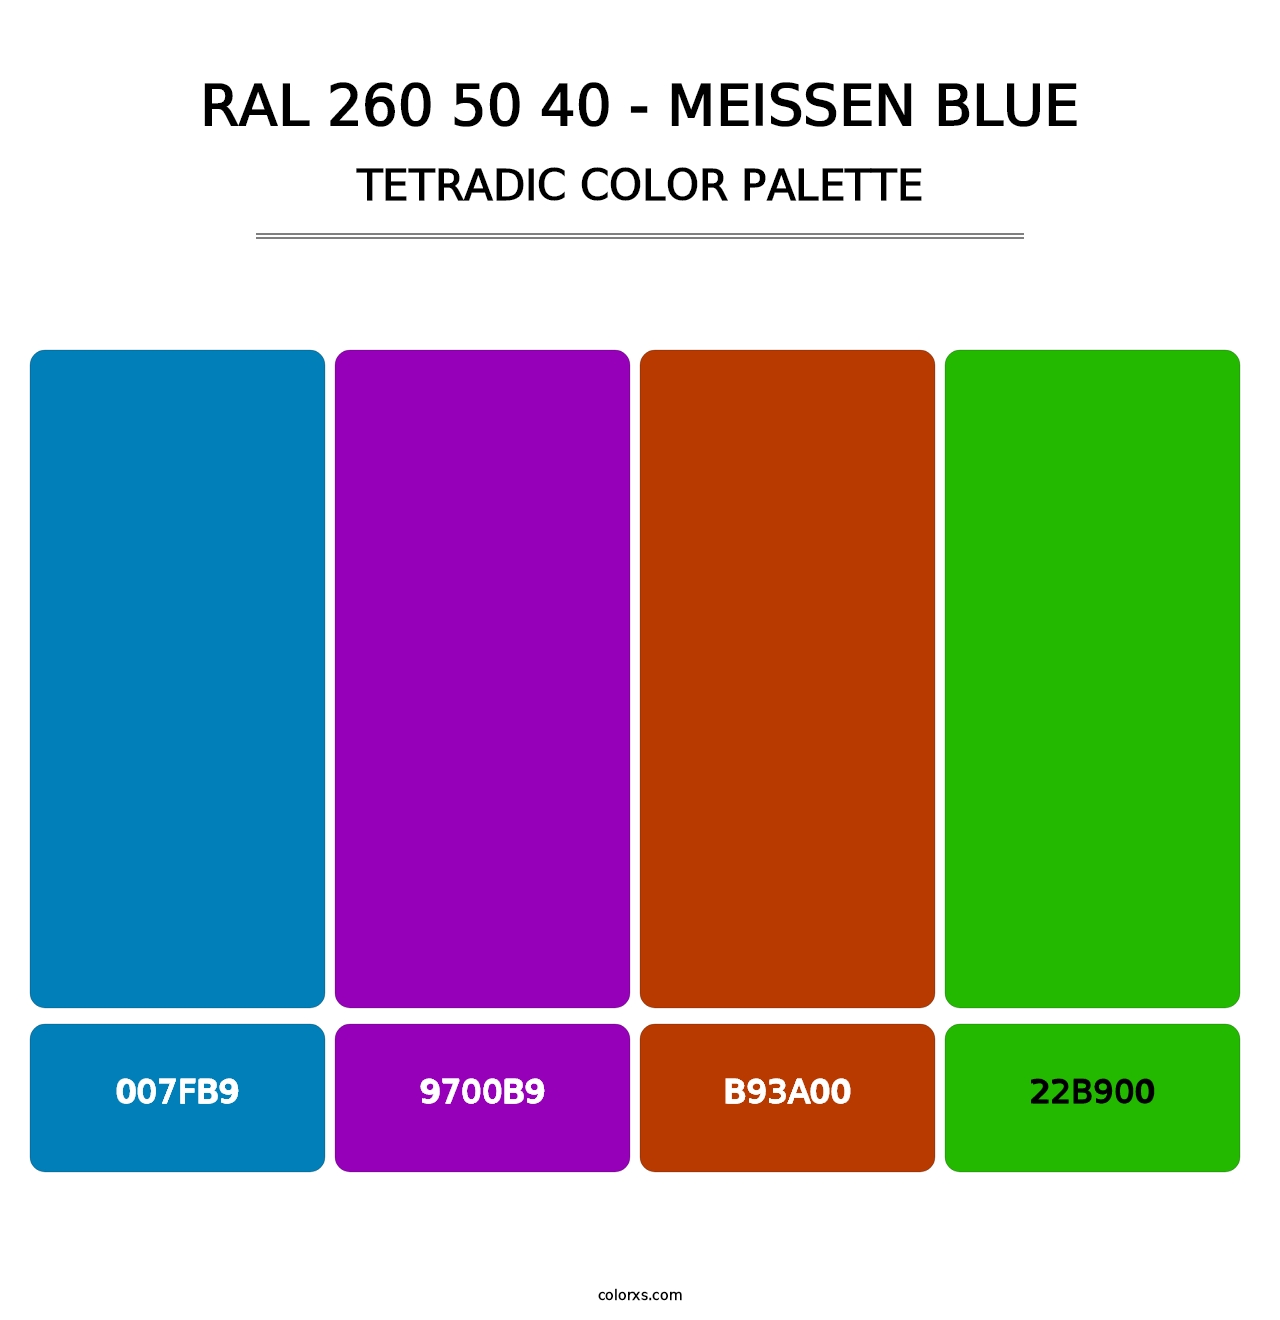 RAL 260 50 40 - Meissen Blue - Tetradic Color Palette